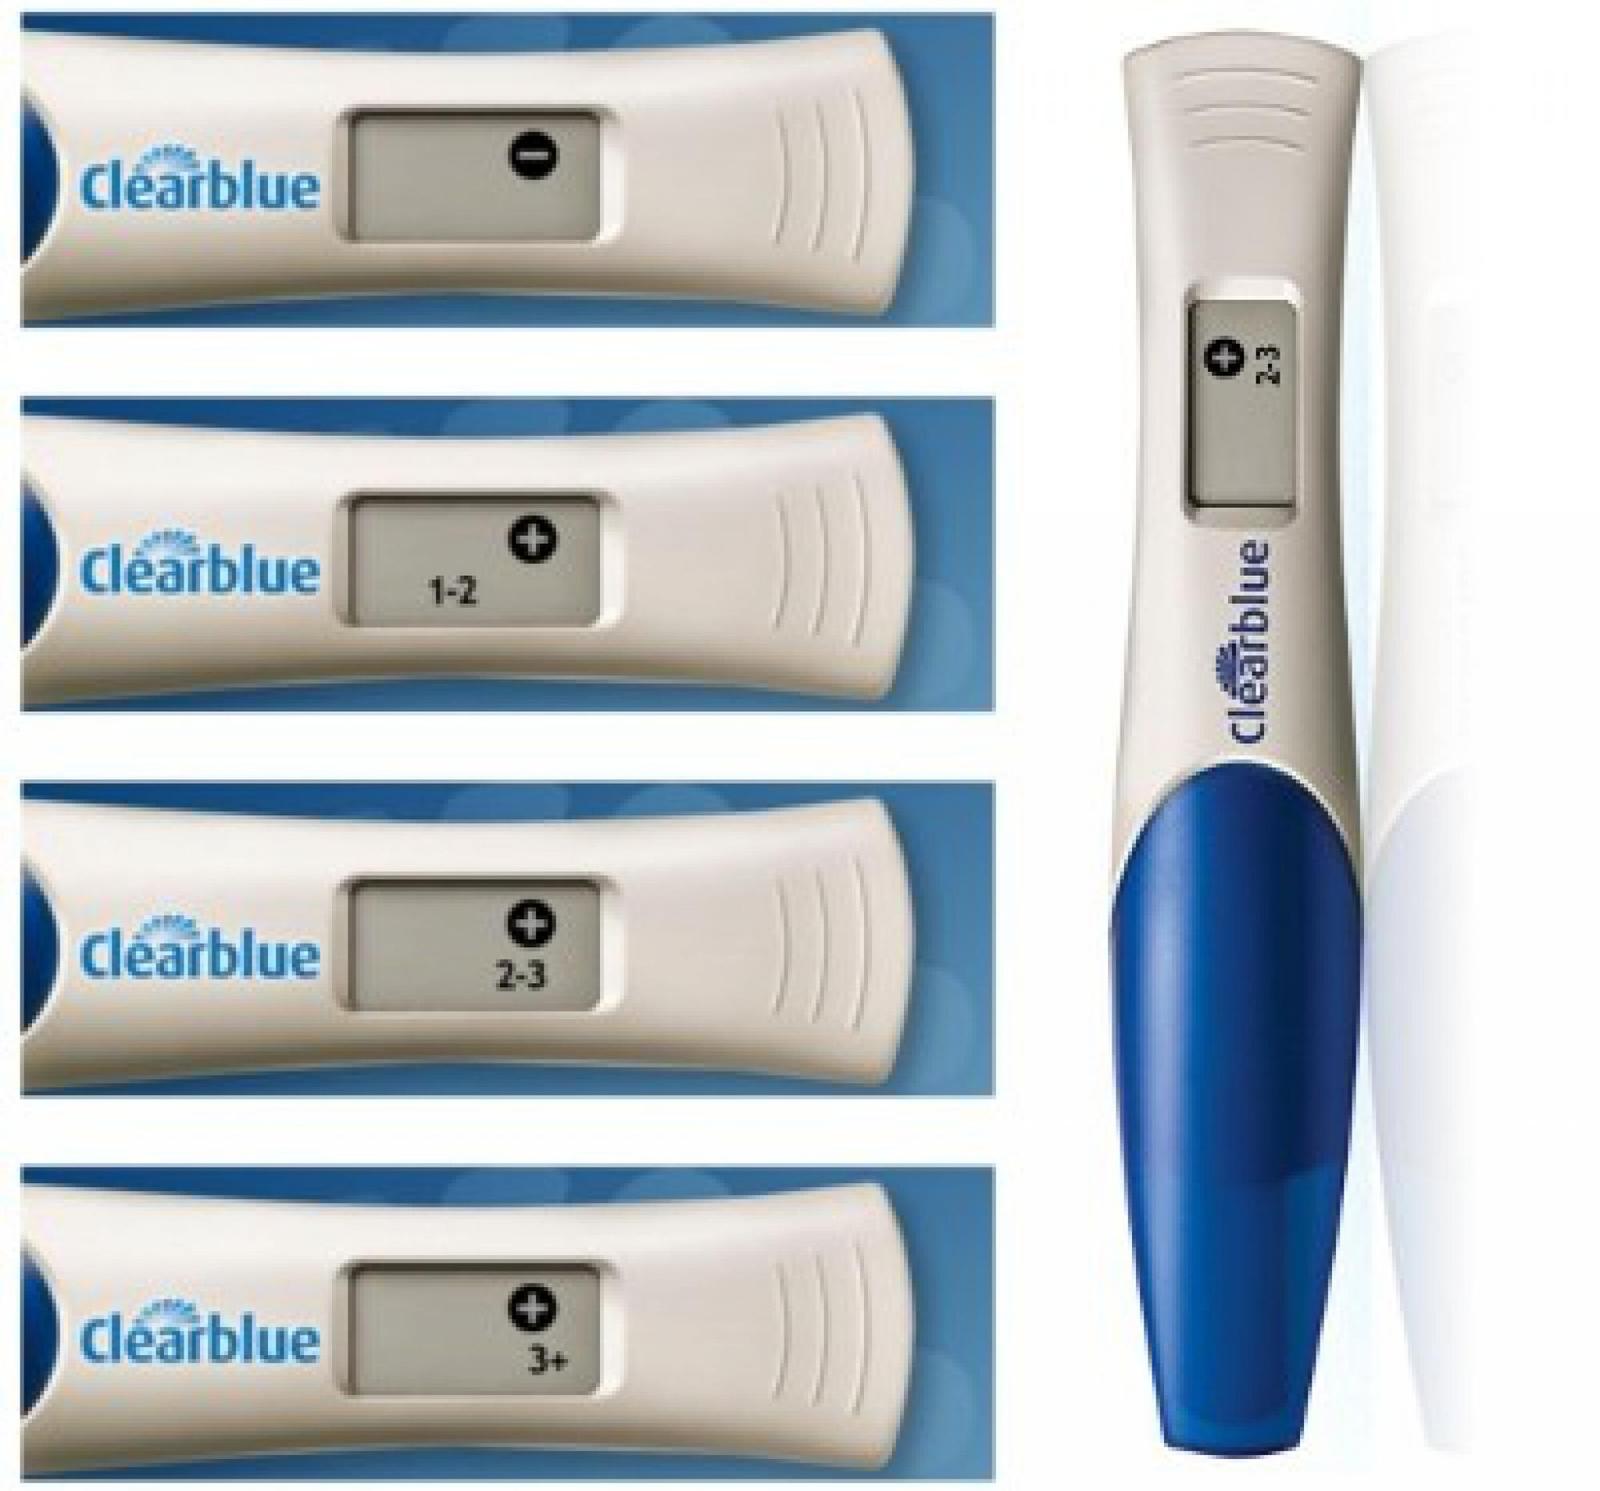 Электронный тест на беременность результаты. Тест клеар Блю. Тест на беременность Clearblue. Тест клеар Блю цифровой. Clearblue 3+.